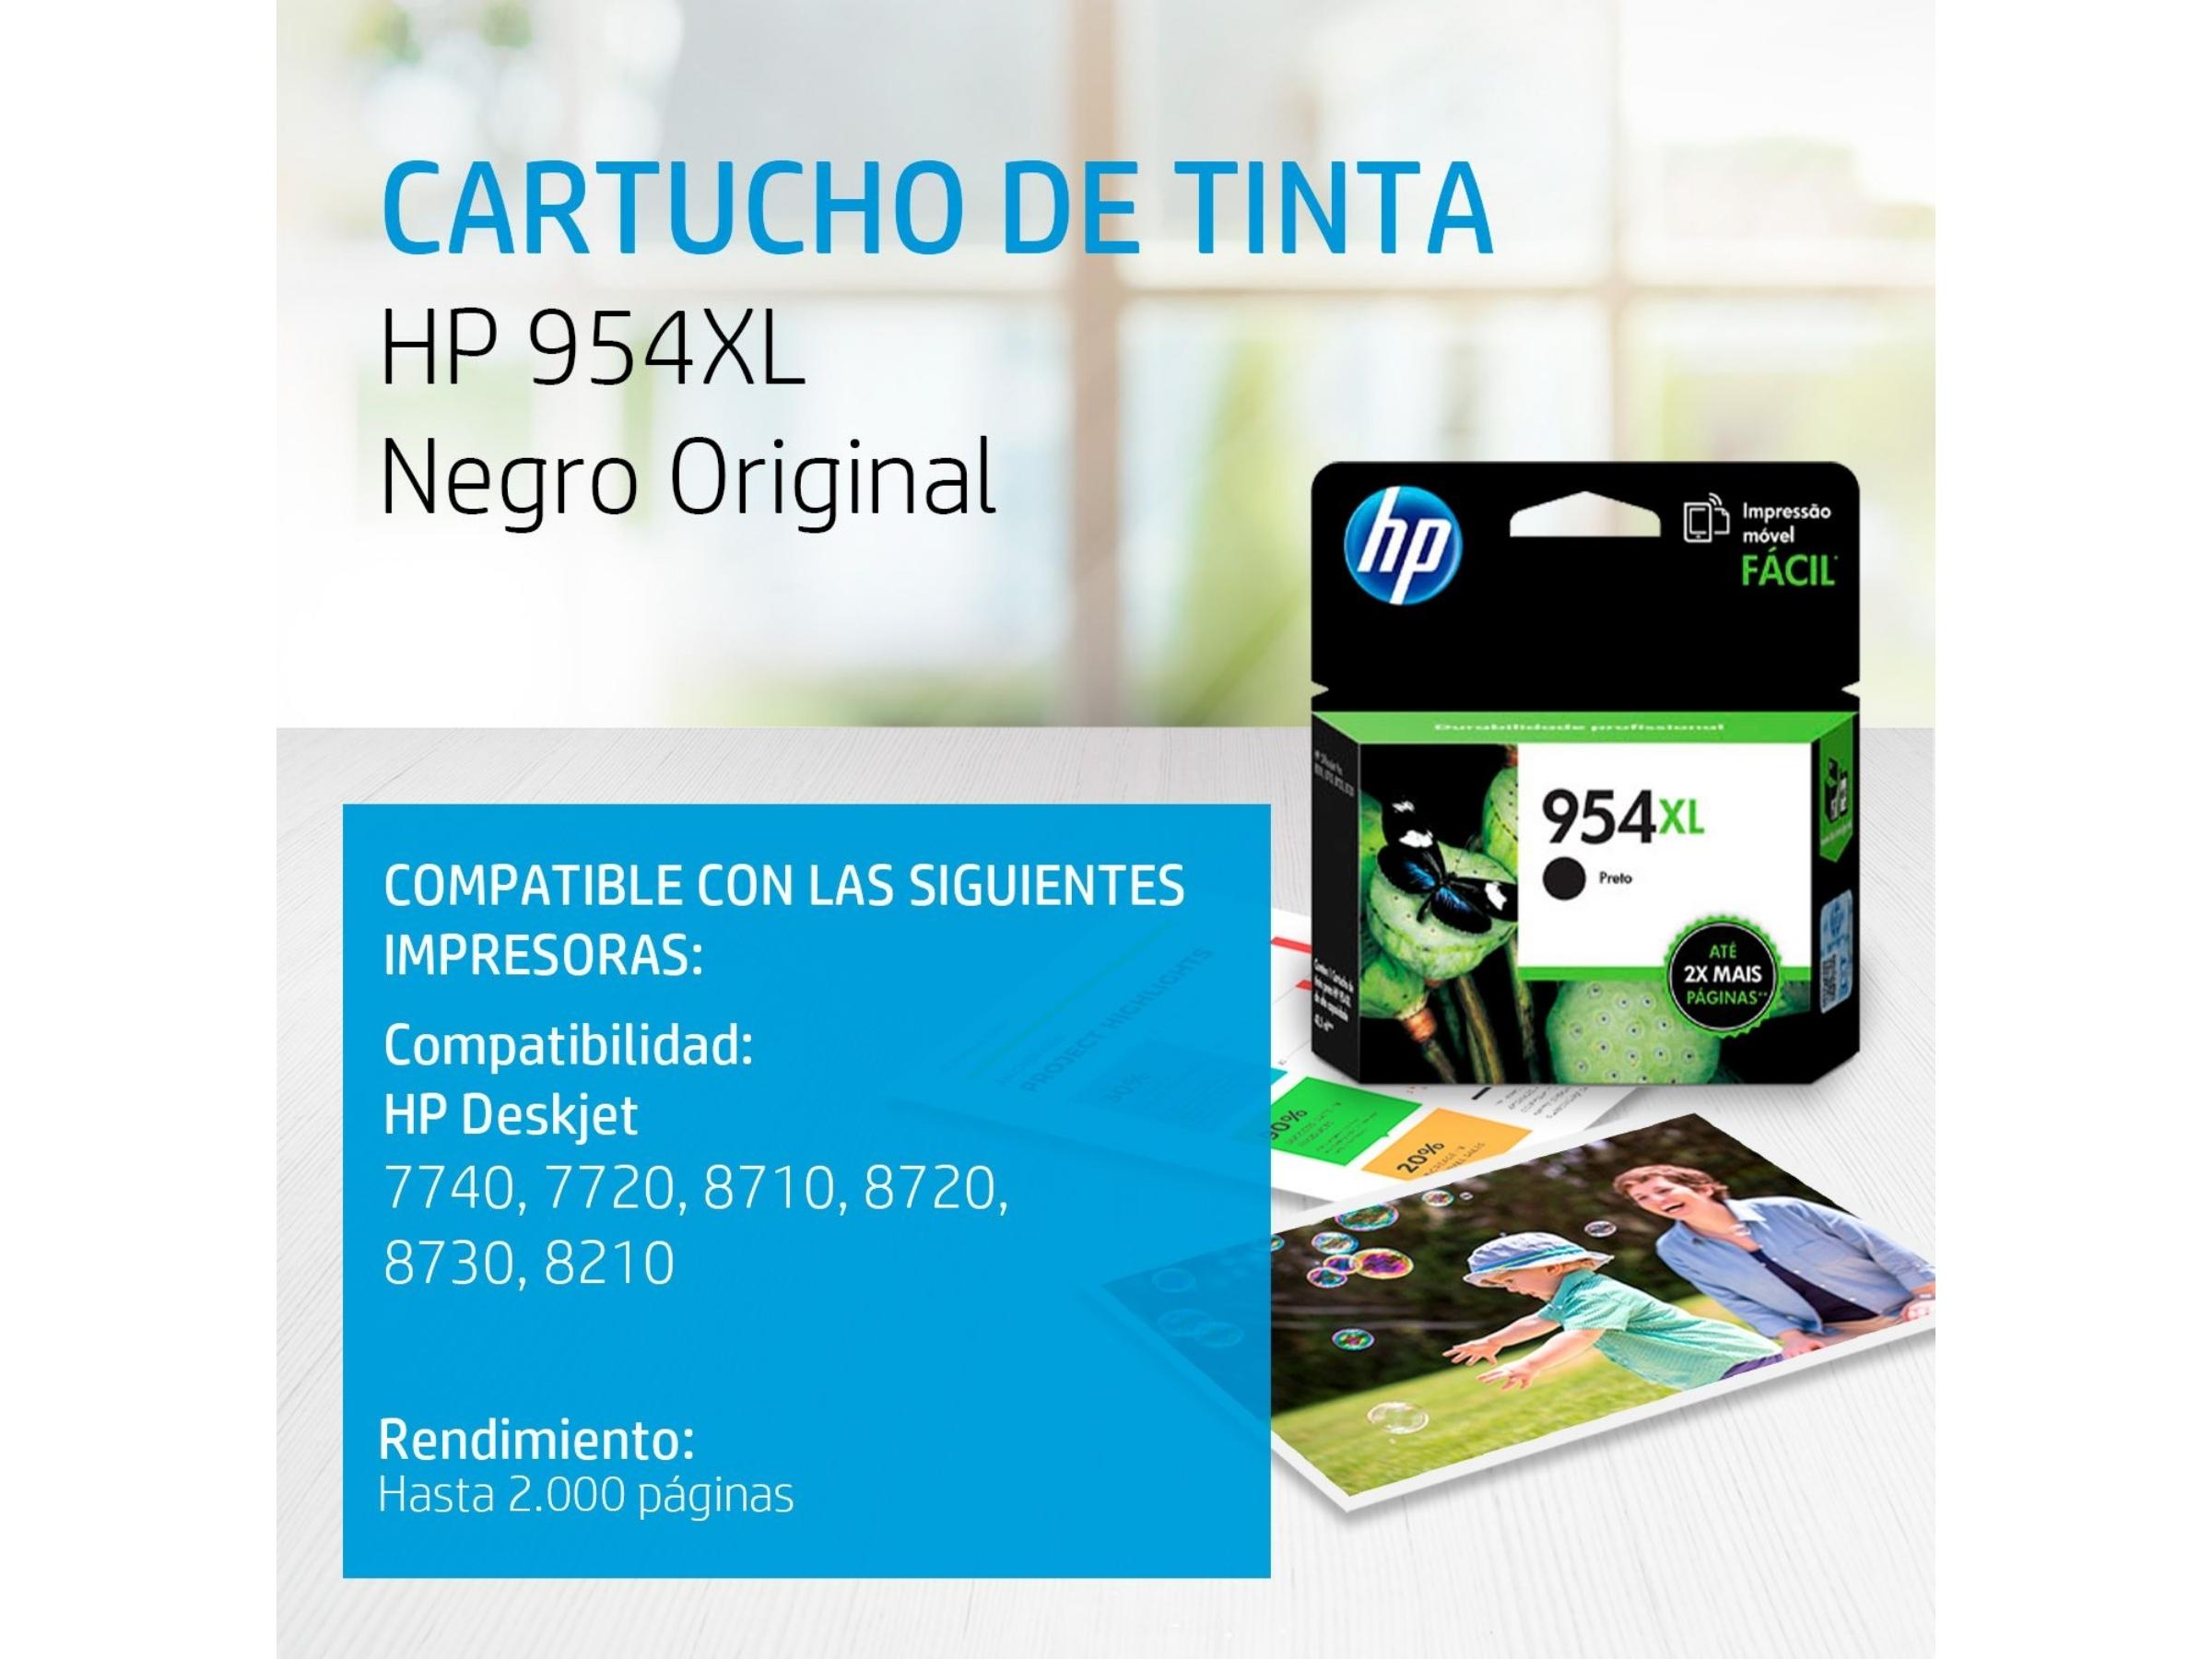 CARTUCHO DE TINTA HP 954XL BLACK (L0S71AL) 8210/8710/8720/8730/7740 2000 PAG.